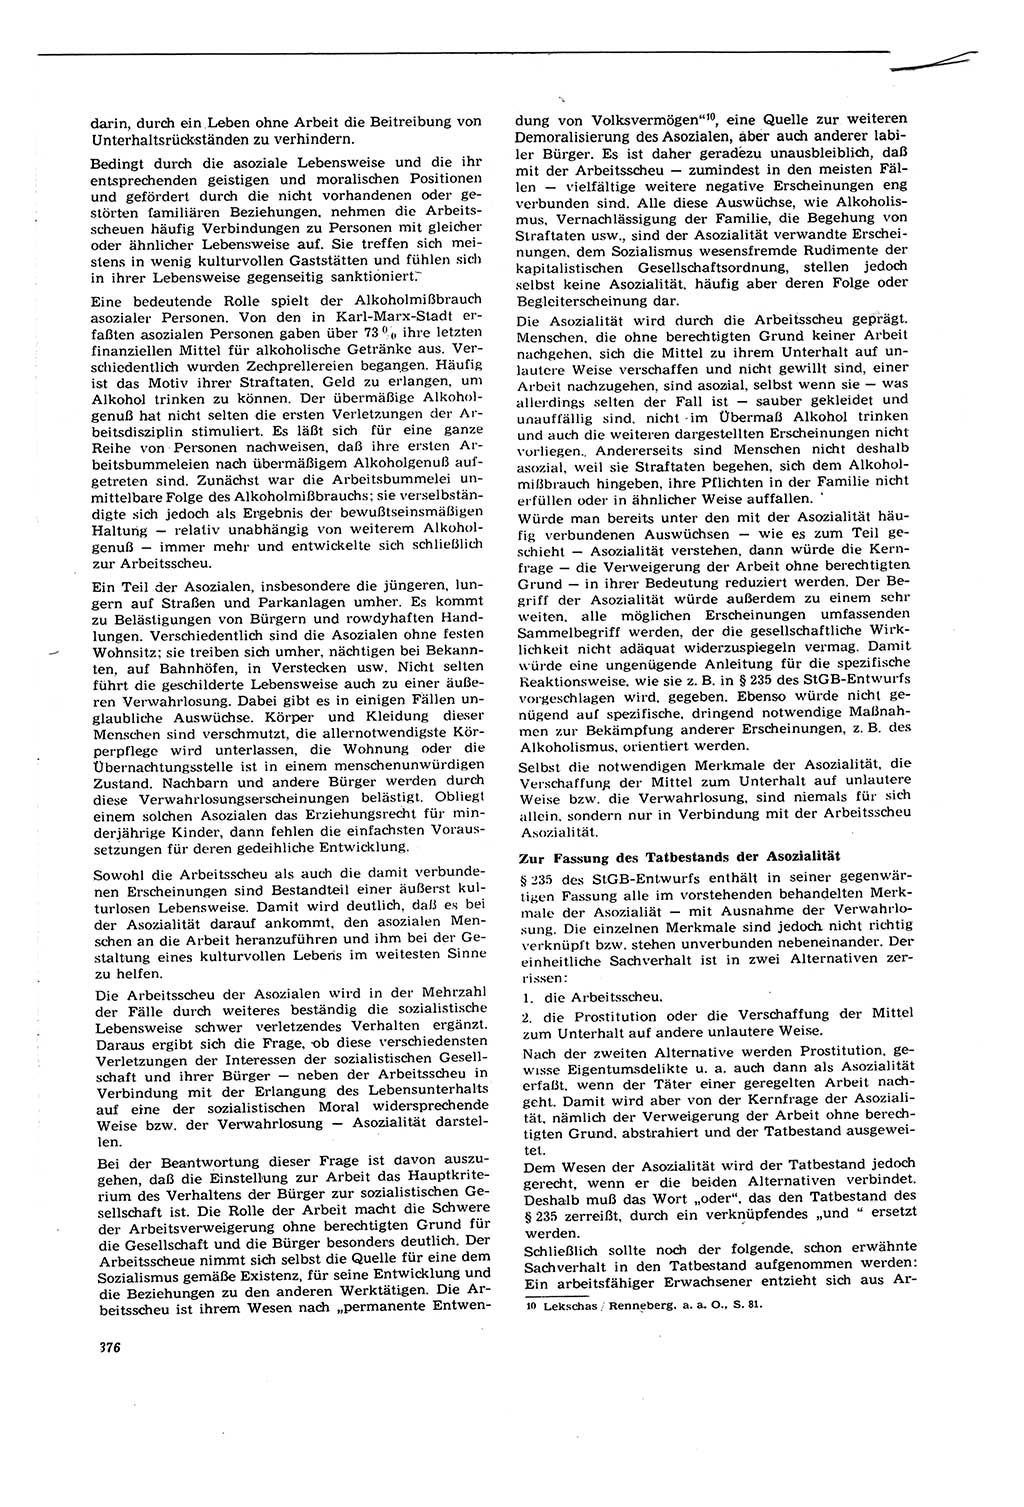 Neue Justiz (NJ), Zeitschrift für Recht und Rechtswissenschaft [Deutsche Demokratische Republik (DDR)], 21. Jahrgang 1967, Seite 376 (NJ DDR 1967, S. 376)